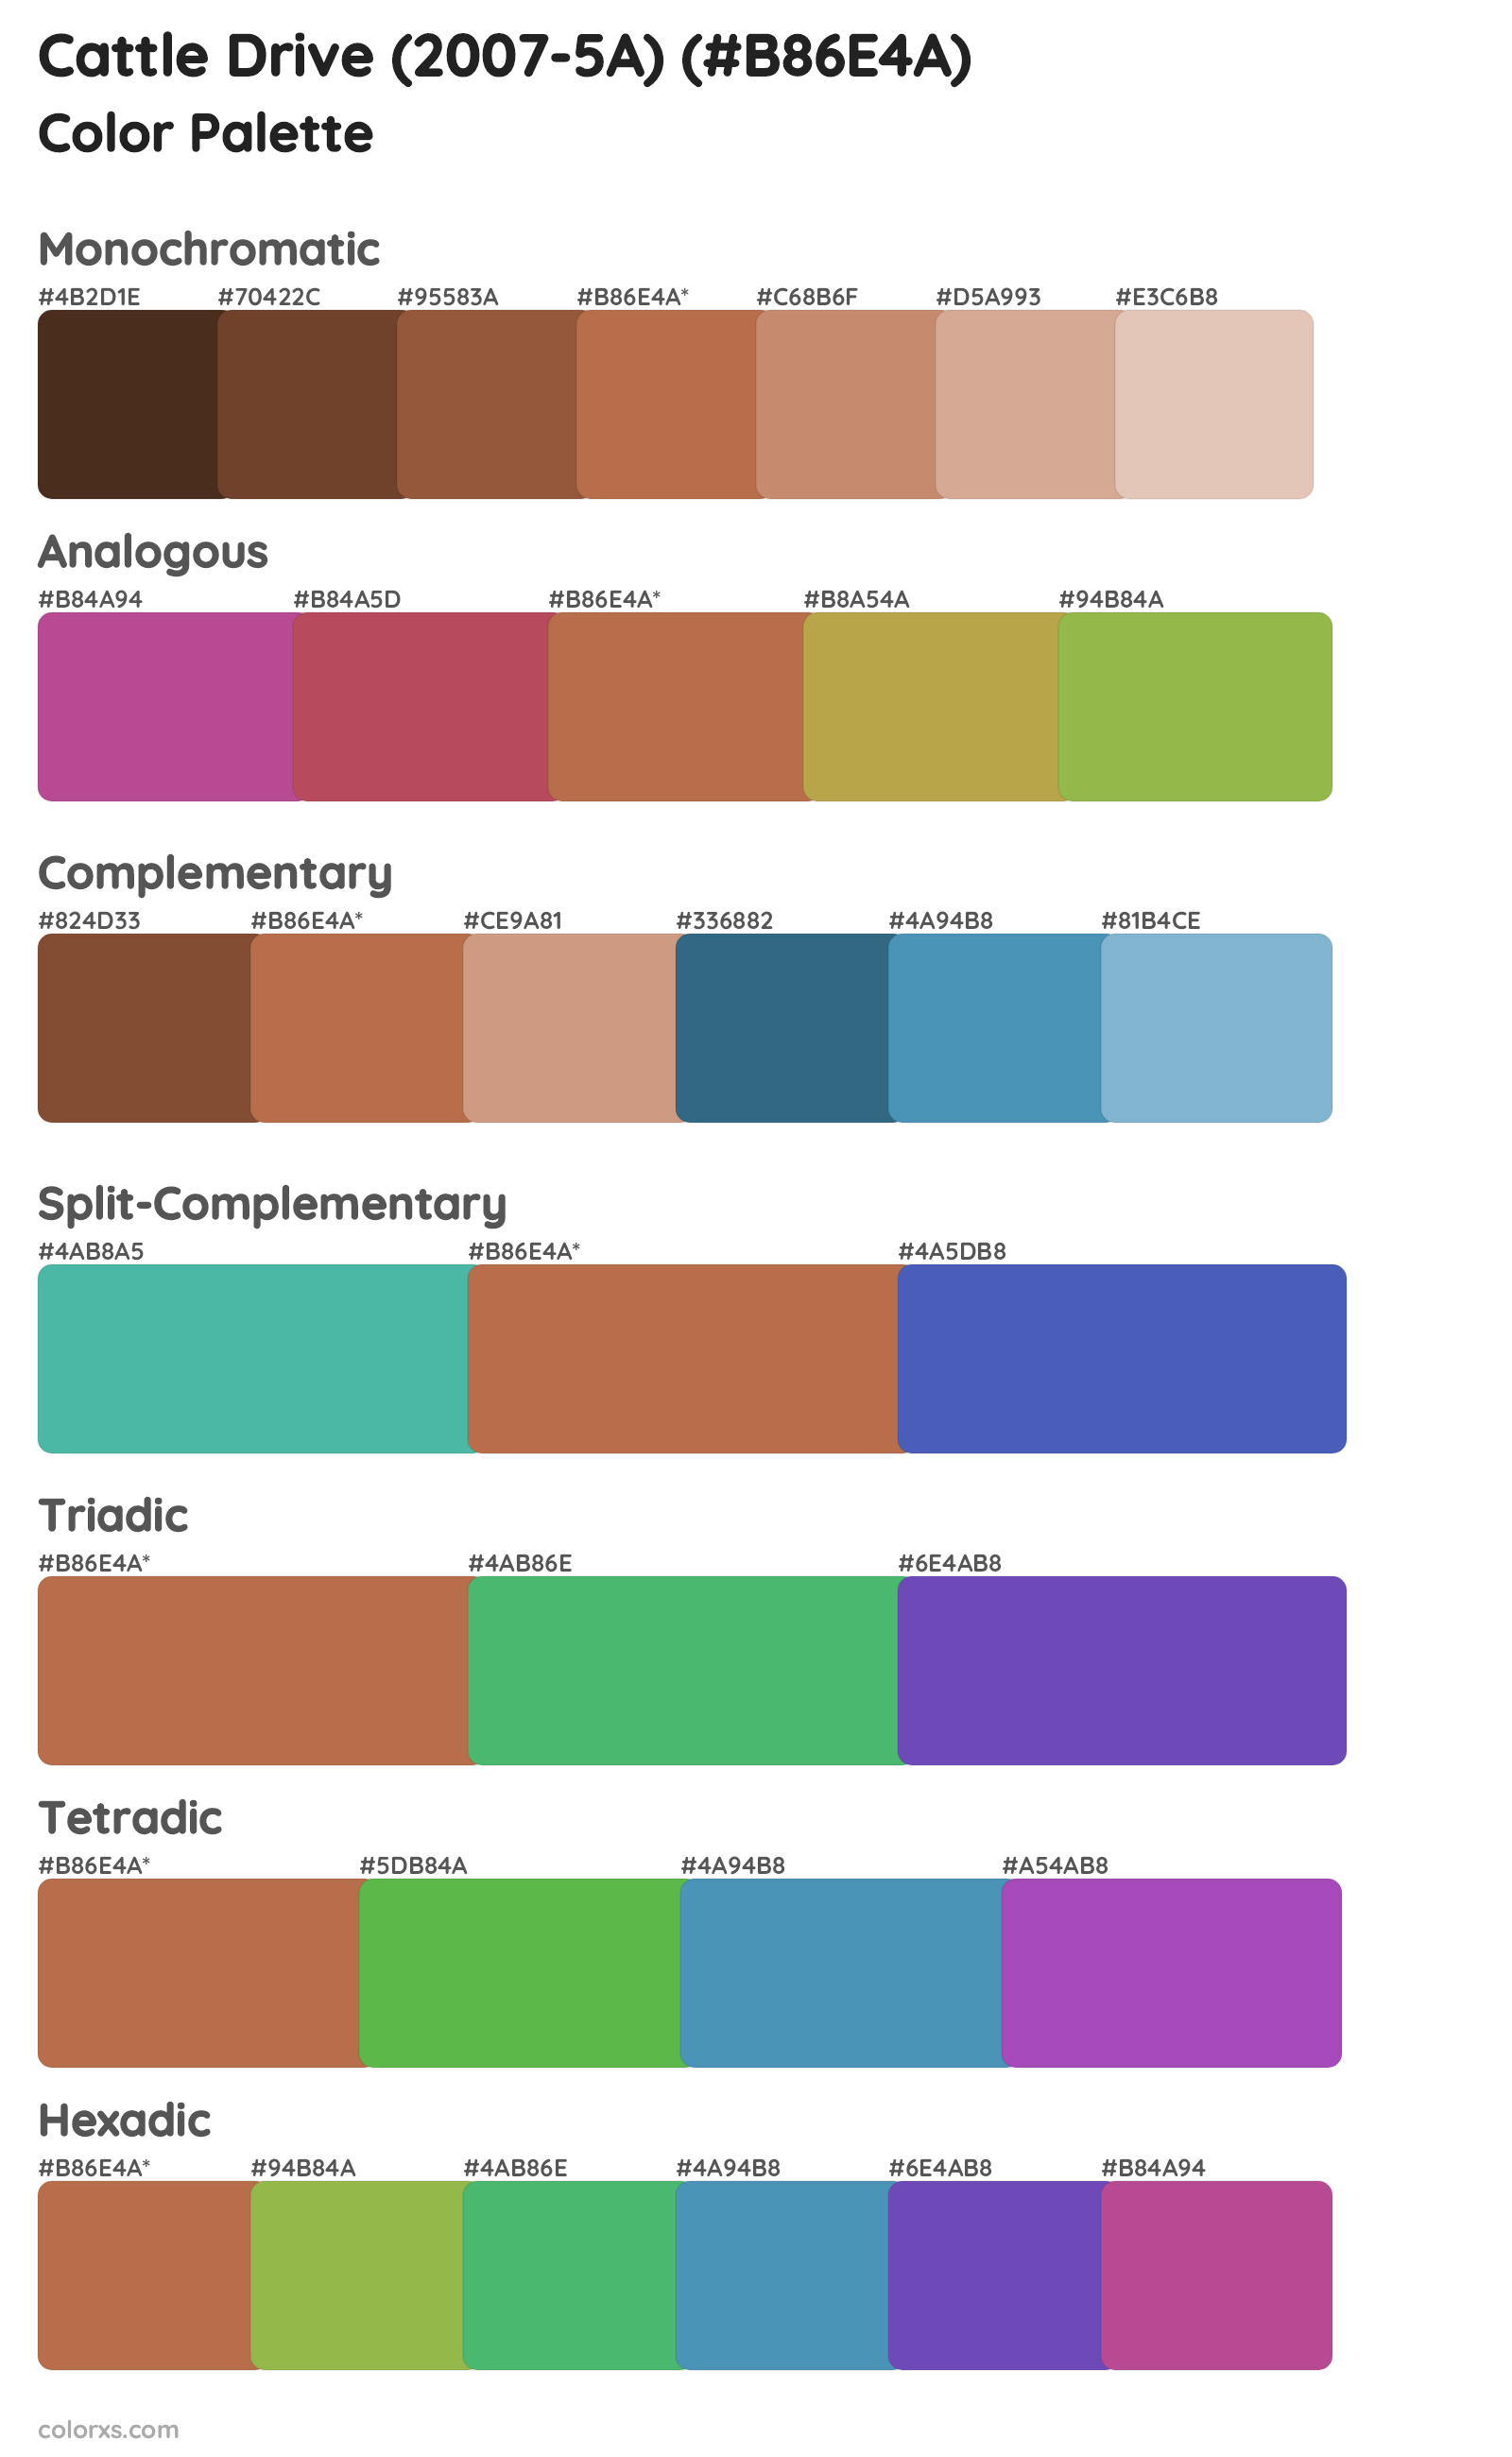 Cattle Drive (2007-5A) Color Scheme Palettes